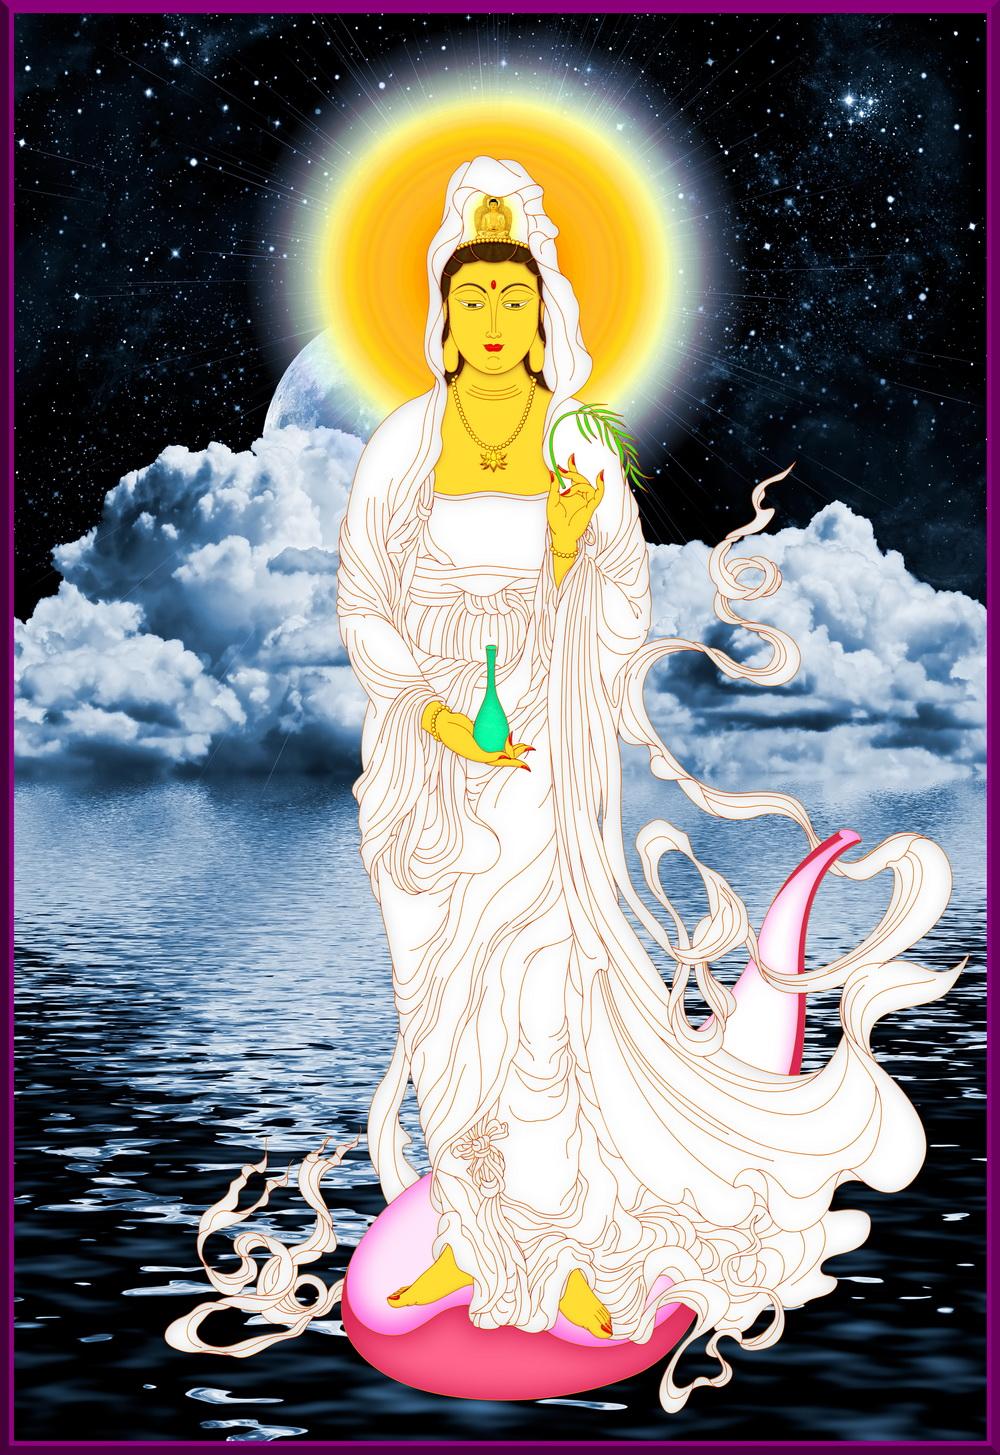 Ý nghĩa của tượng đồng Phật Bà Quan Âm trong văn hóa thờ cúng